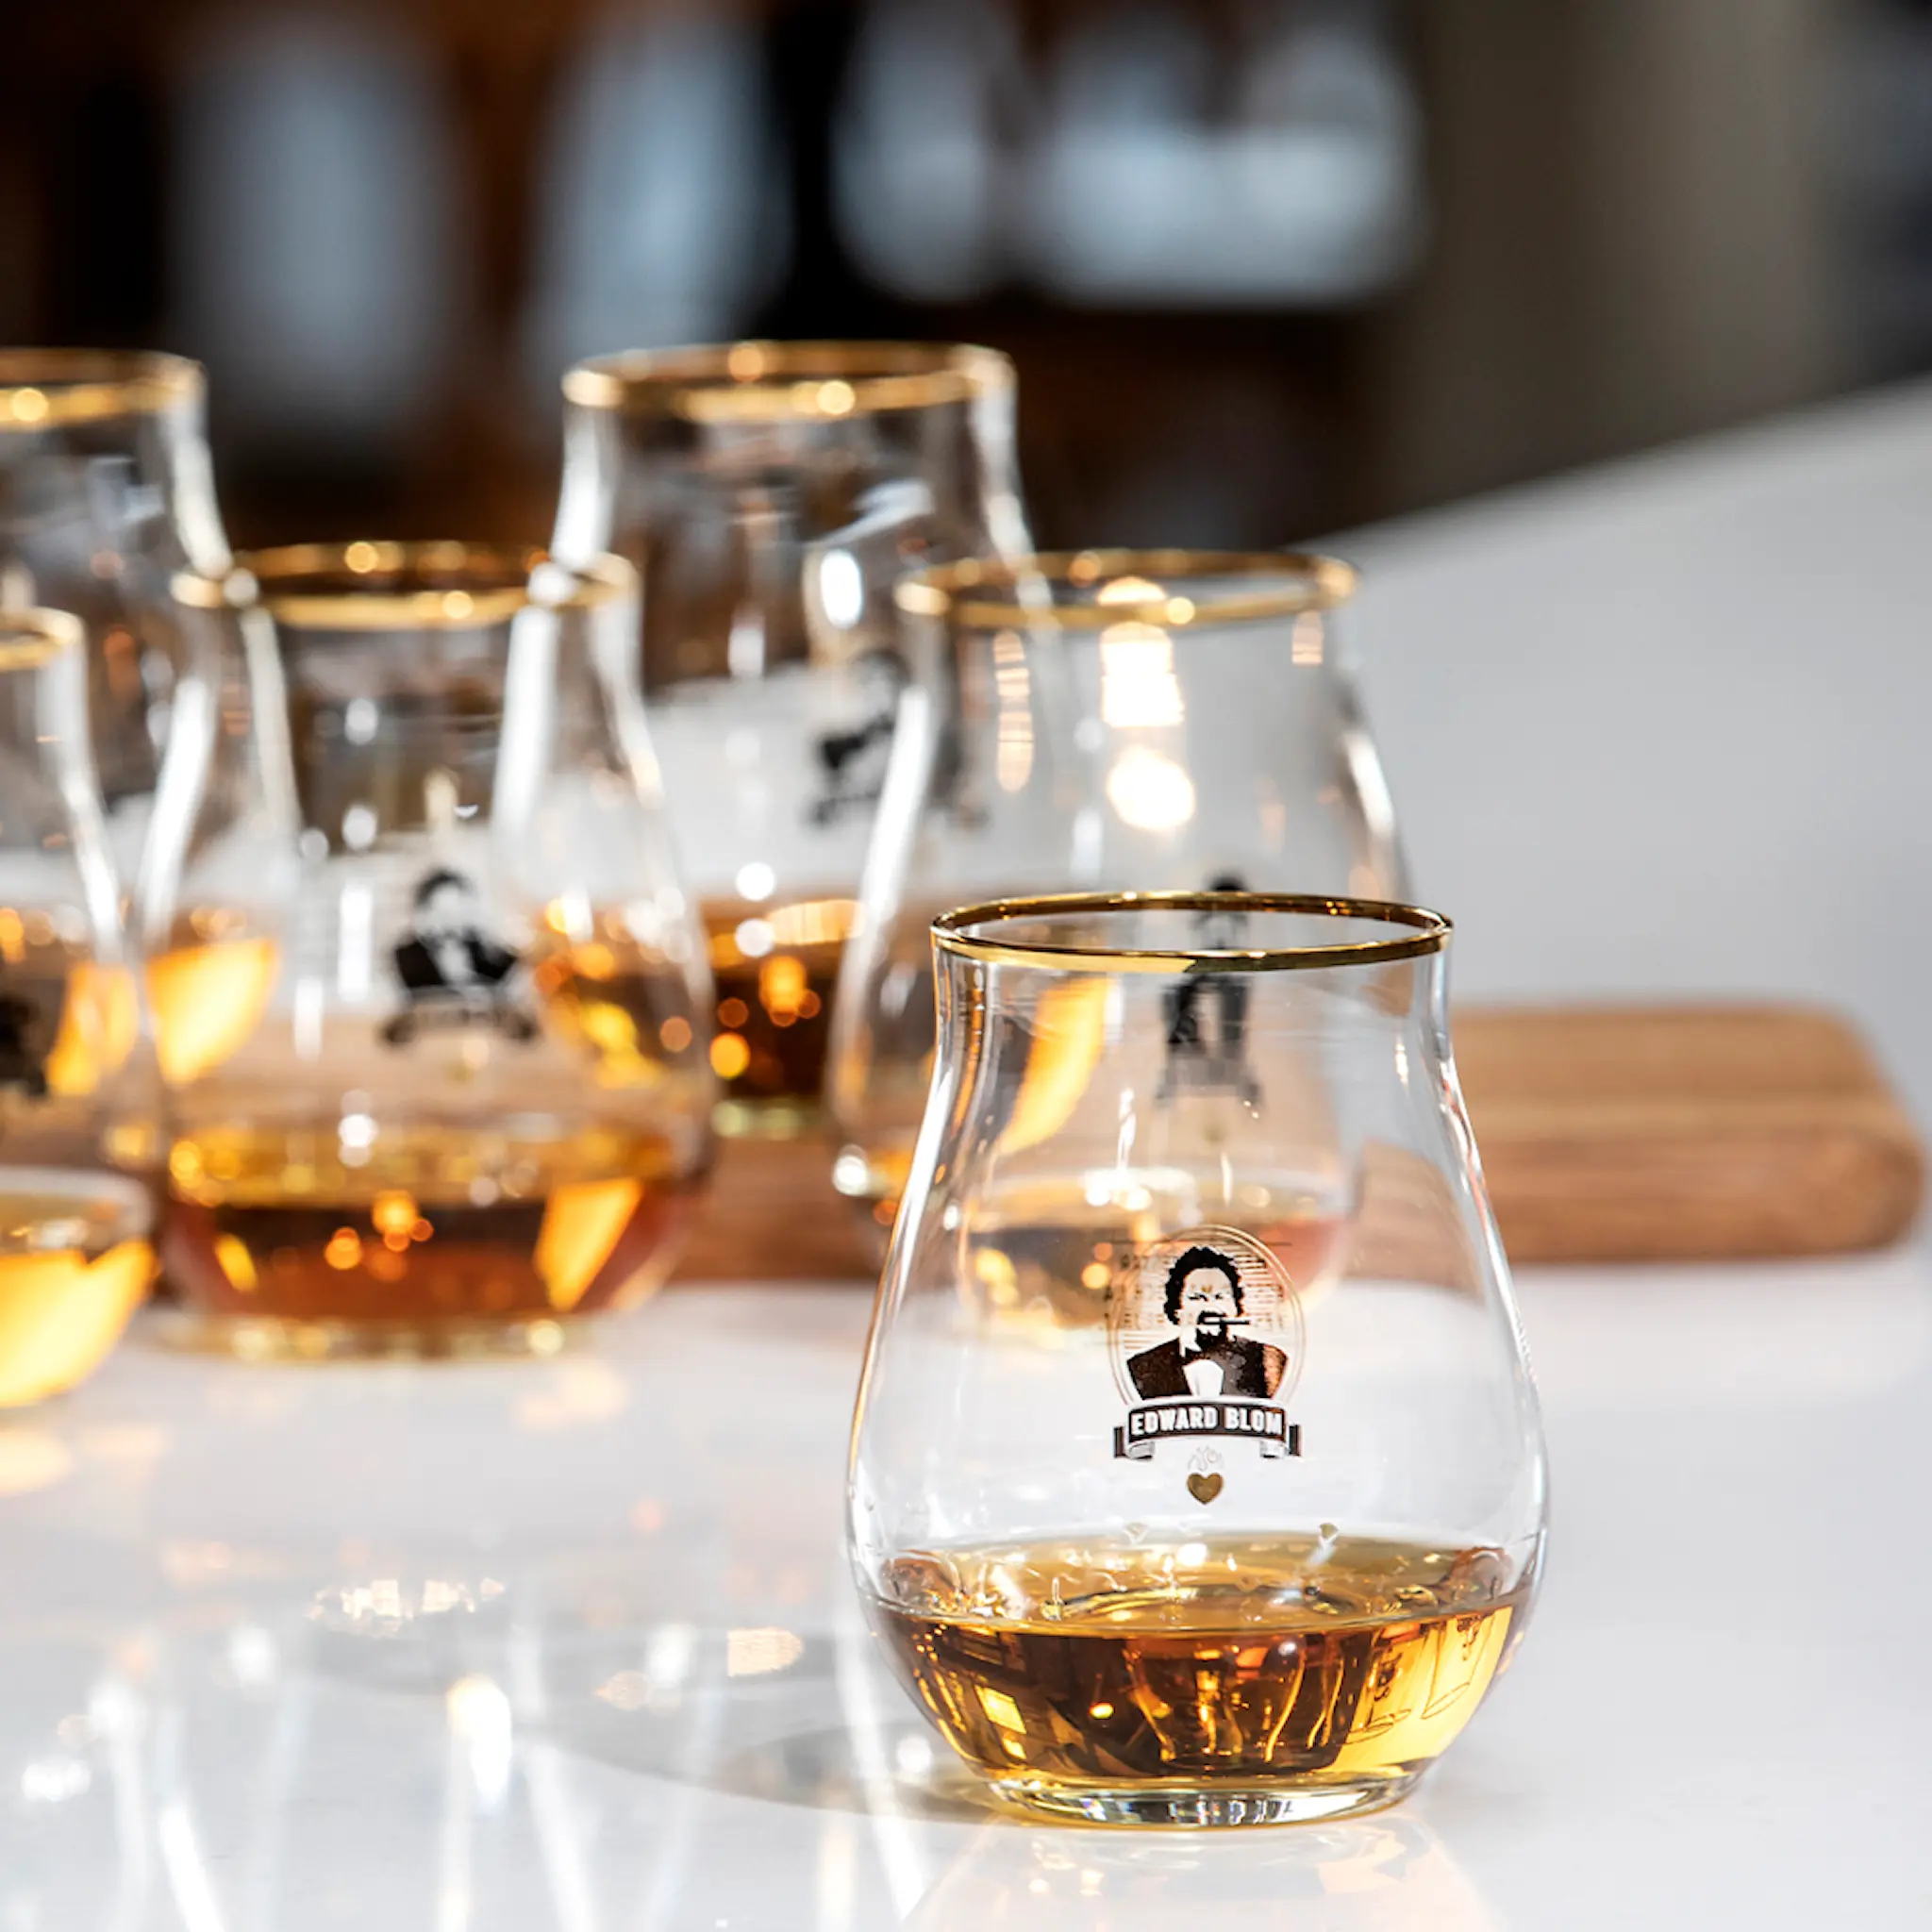 Edward Blom Whisky/Tasting glass 42 cl Når man fester